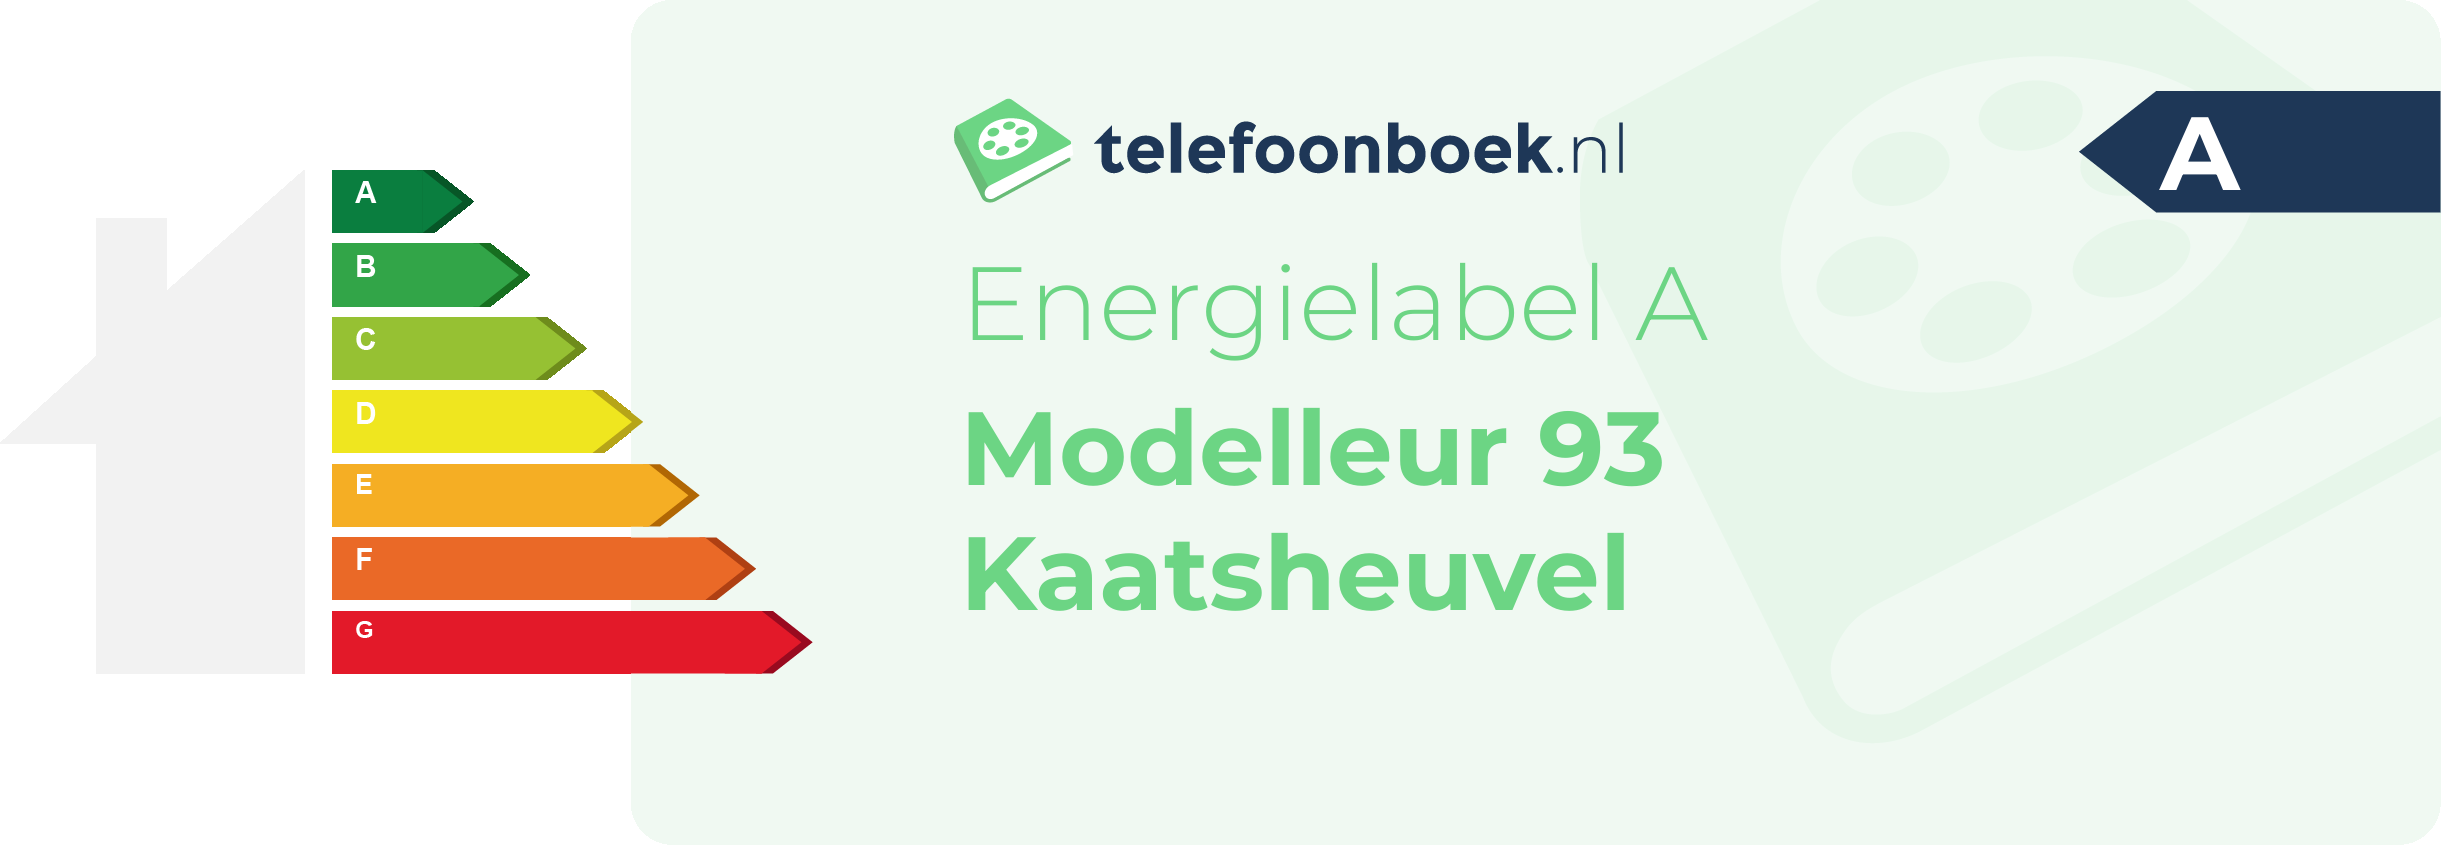 Energielabel Modelleur 93 Kaatsheuvel